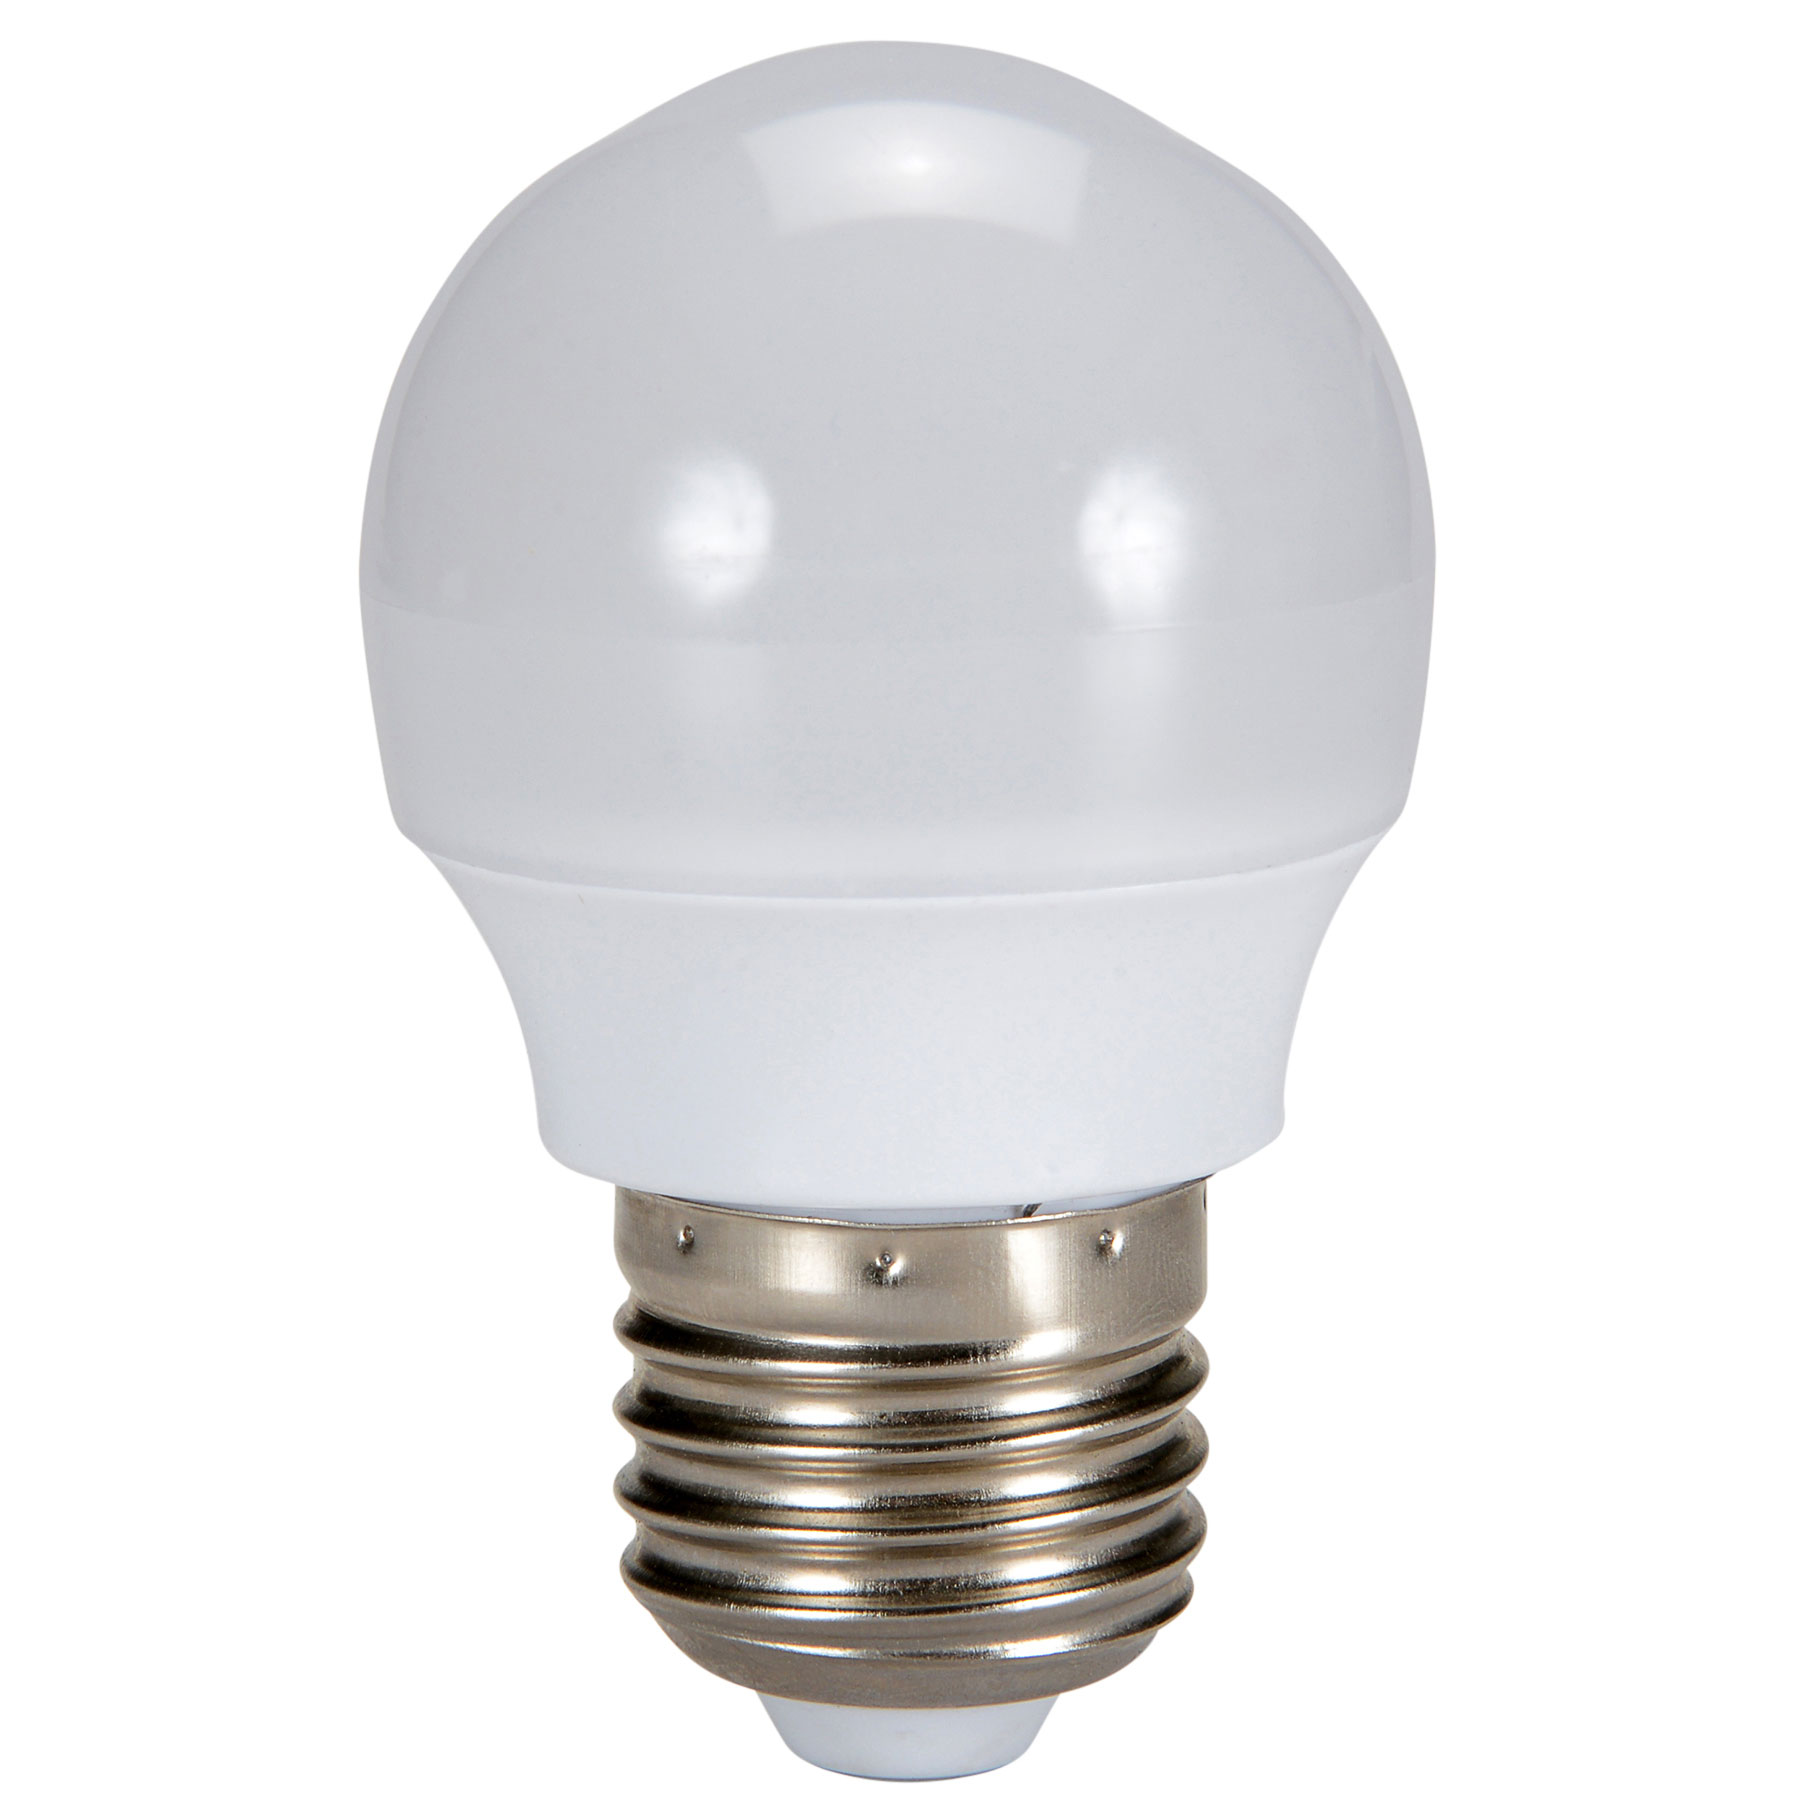 Soft White LED Light Bulb 3W 100 Lumen